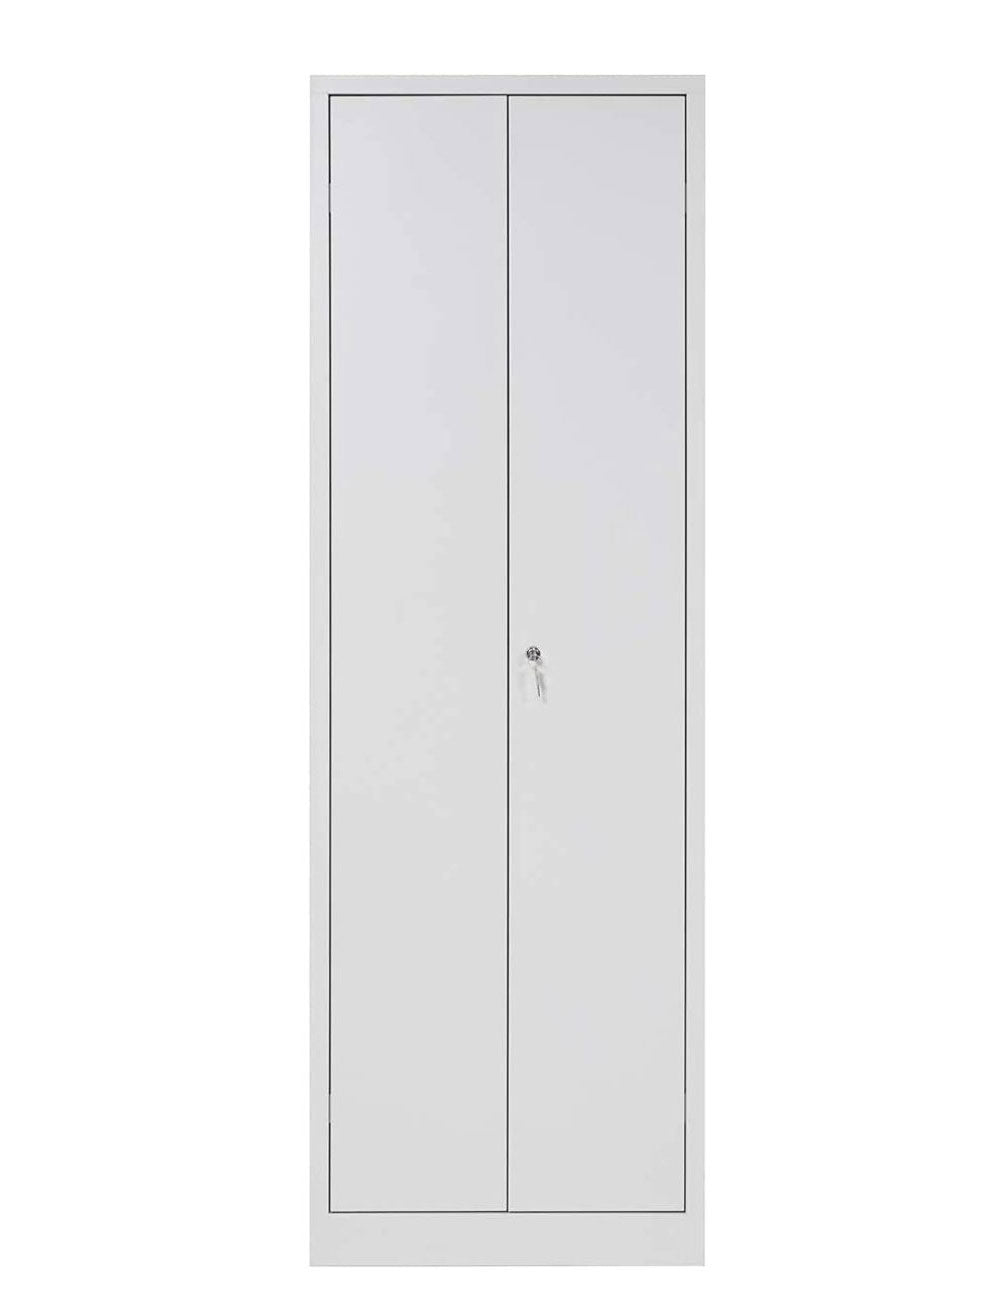 Furni24 TÜV/GS - Metall Putzmittelschrank – Wäsche Schrank aus Stahl mit Türen, Garderobenstange, große Fächer, Hutablage, fertig montiert - Grau, XXL 60 x 50 x 180 cm